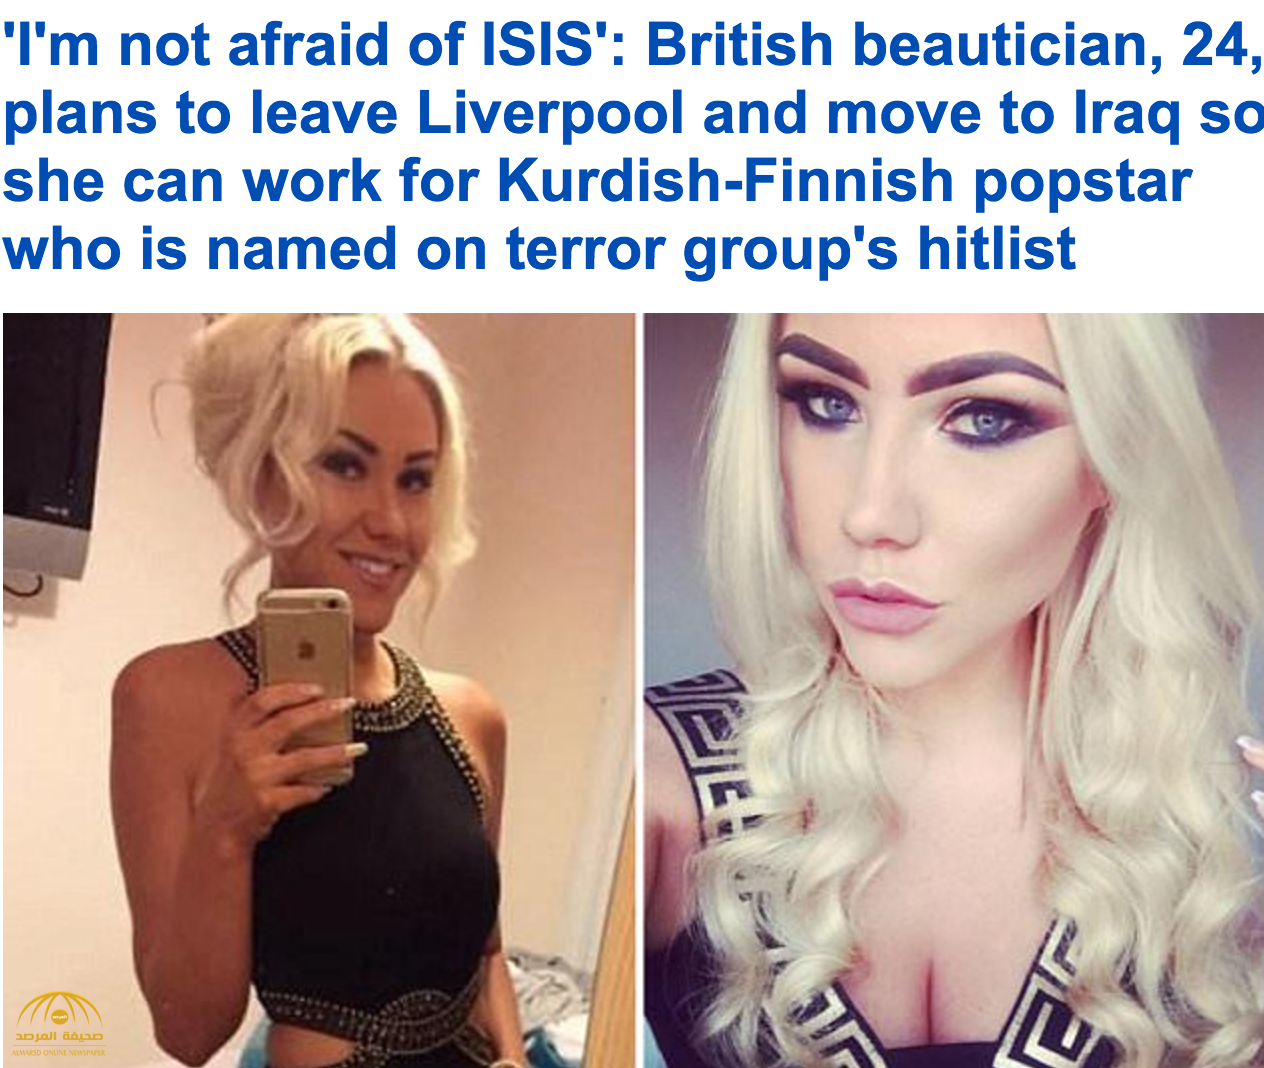 خبيرة تجميل بريطانية تسافر للعراق لمحاربة داعش وتعلنها بقوة : لست خائفة